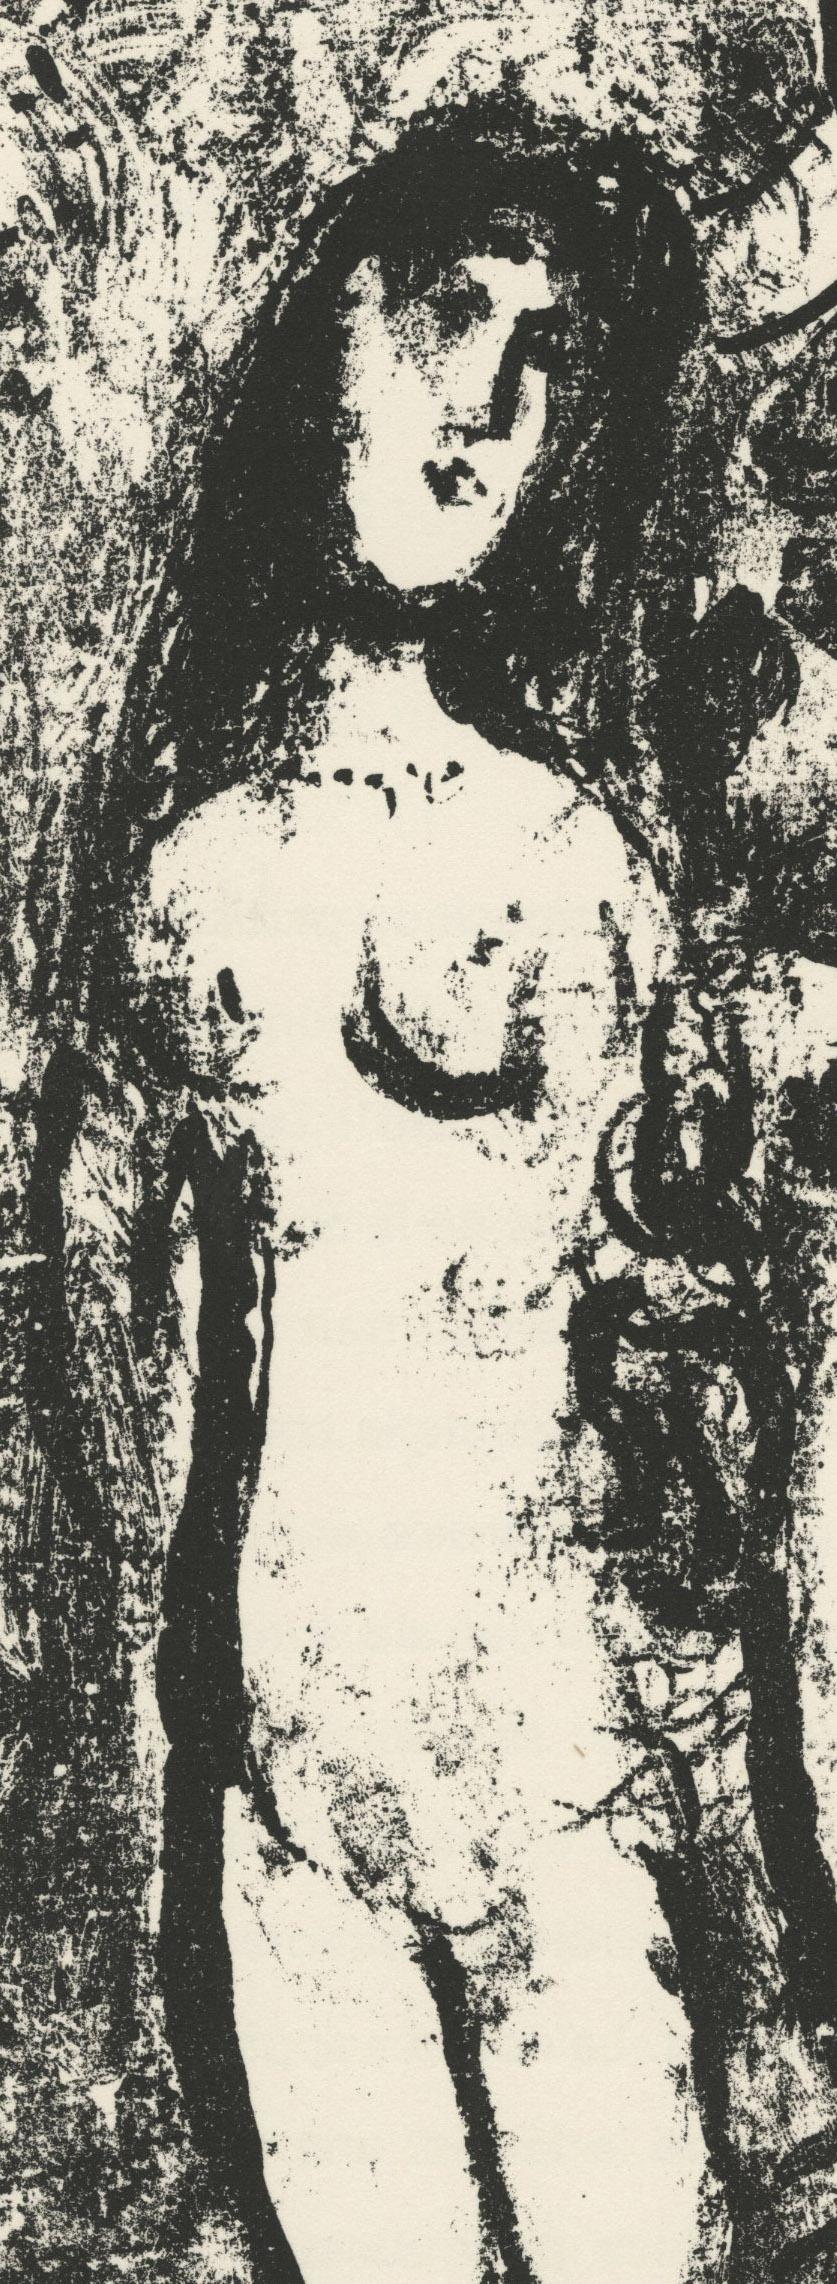 Le Clown Blanc (The White Clown) - Print by Marc Chagall